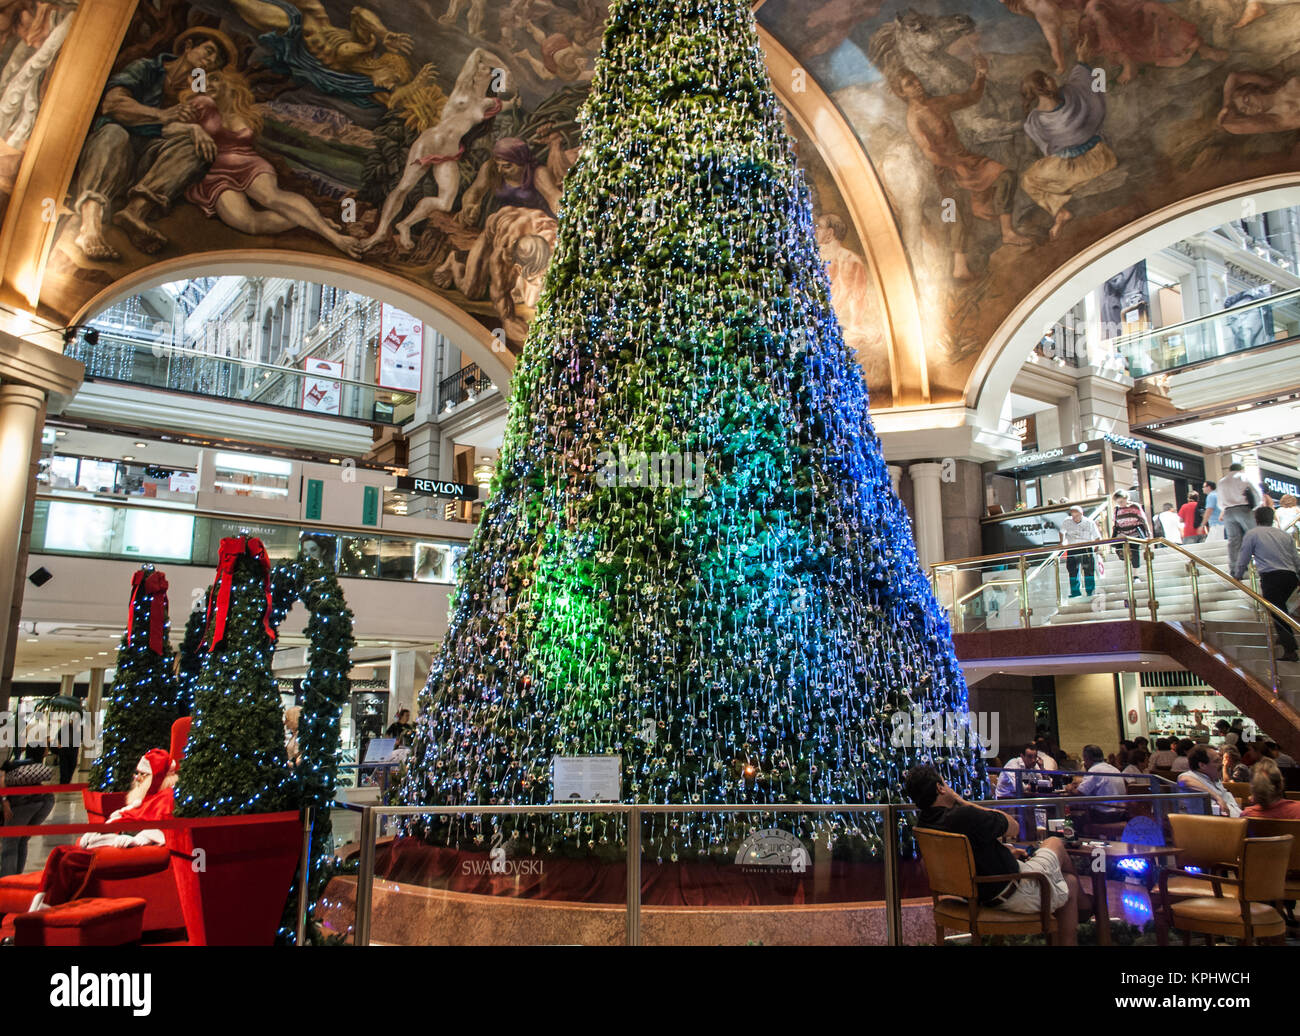 Weihnachten im Galerías Pacífico, Buenos Aires, Argentinien Stockfotografie  - Alamy